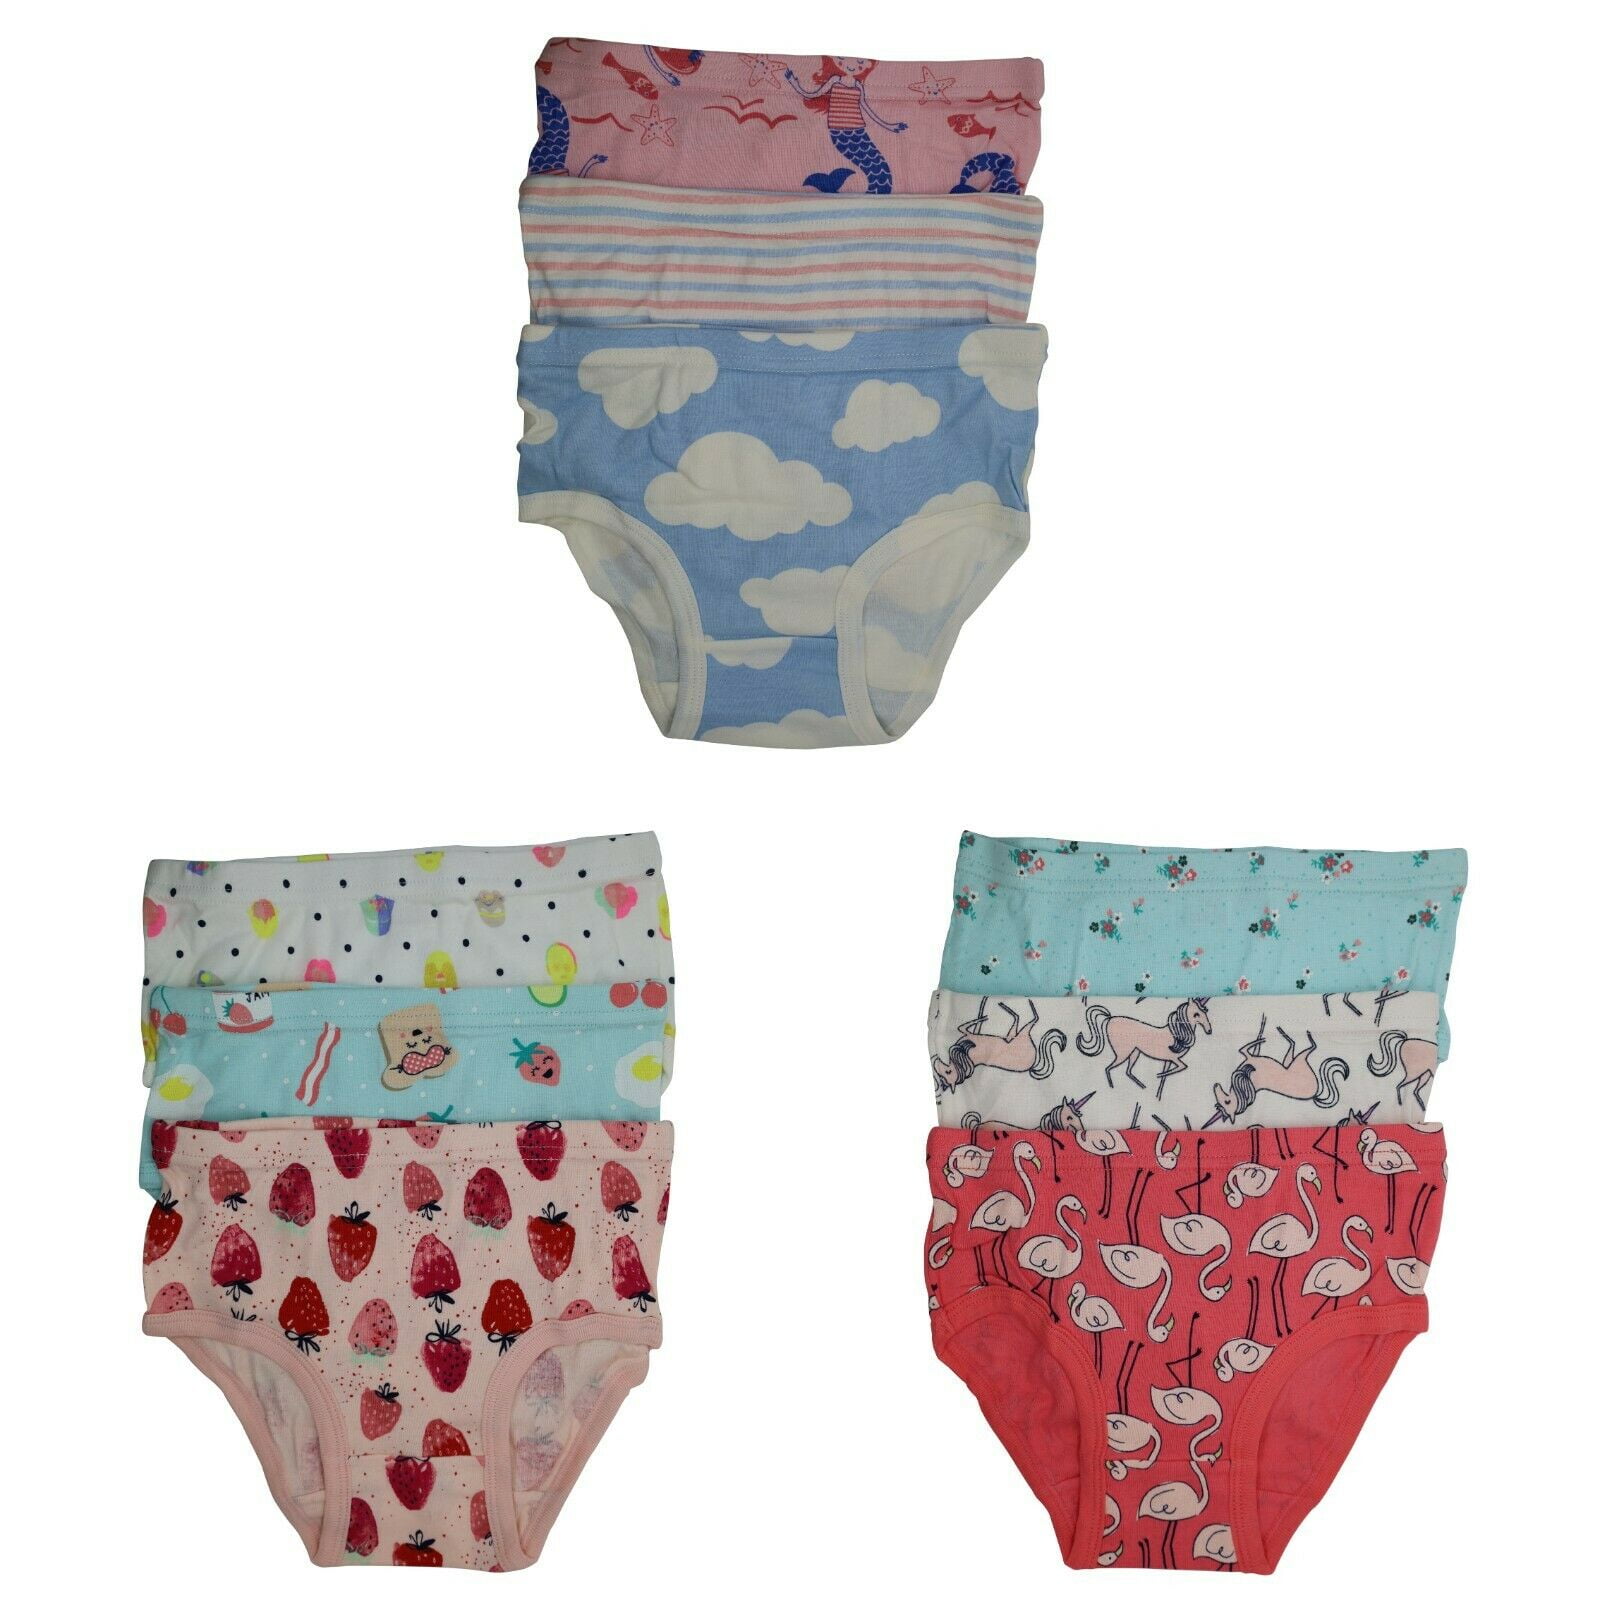 9 Packs Toddler Little Girls Kids Underwear Cotton Briefs Size 2T 3T 4T 5T  6T 